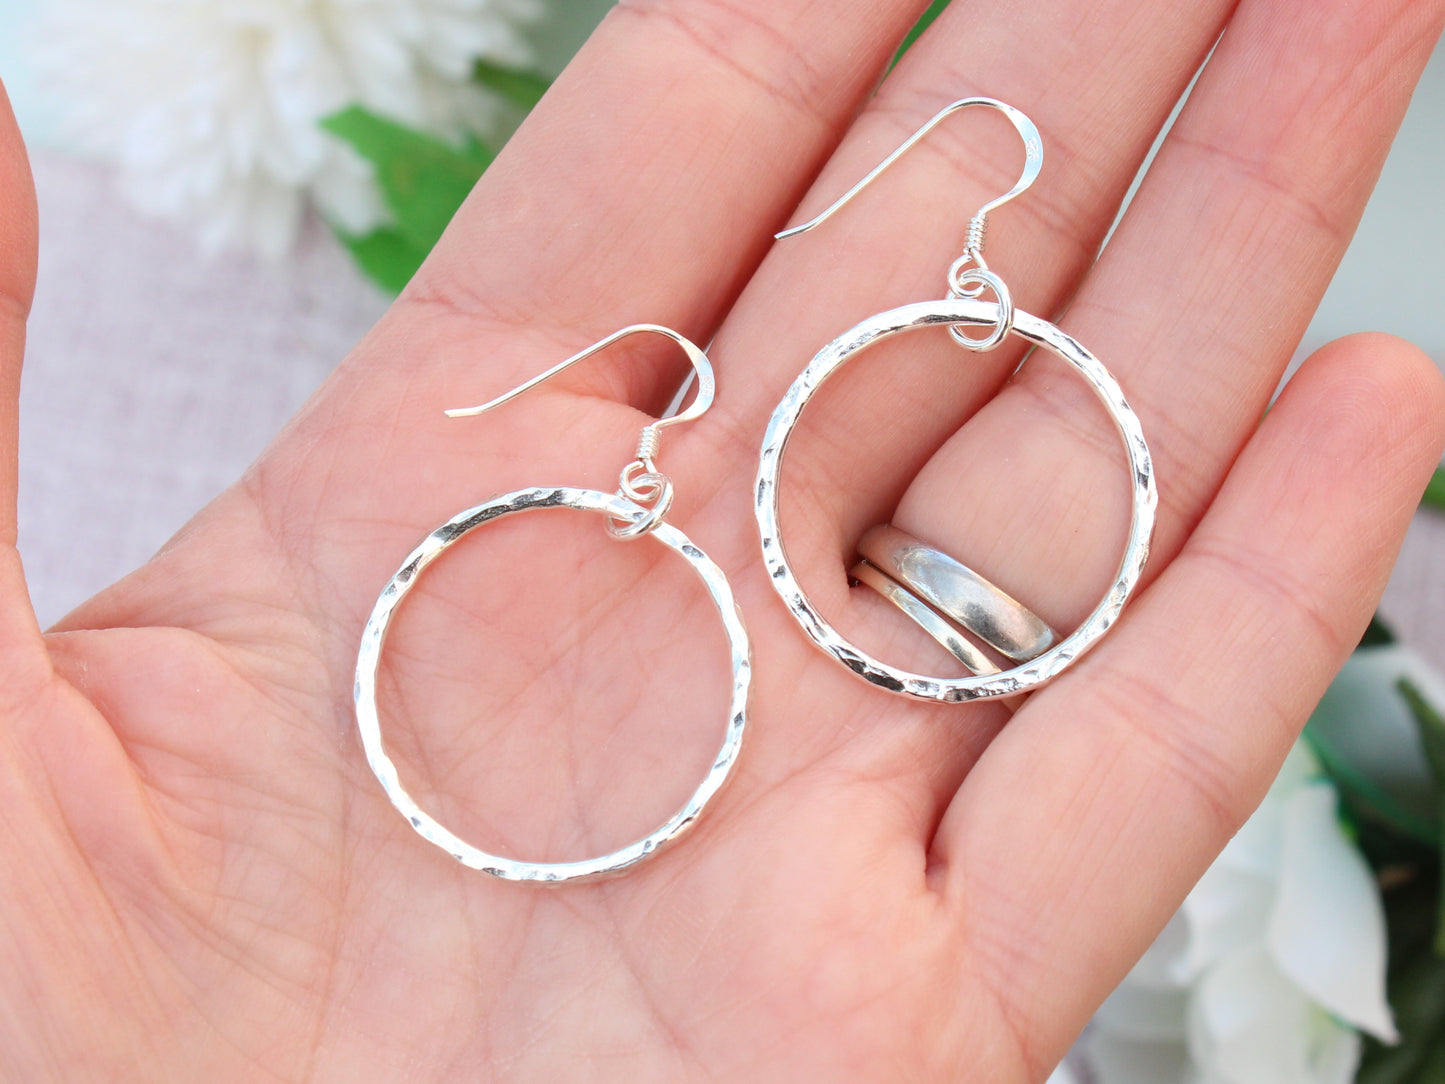 Handmade recycled sterling silver hoop earrings.